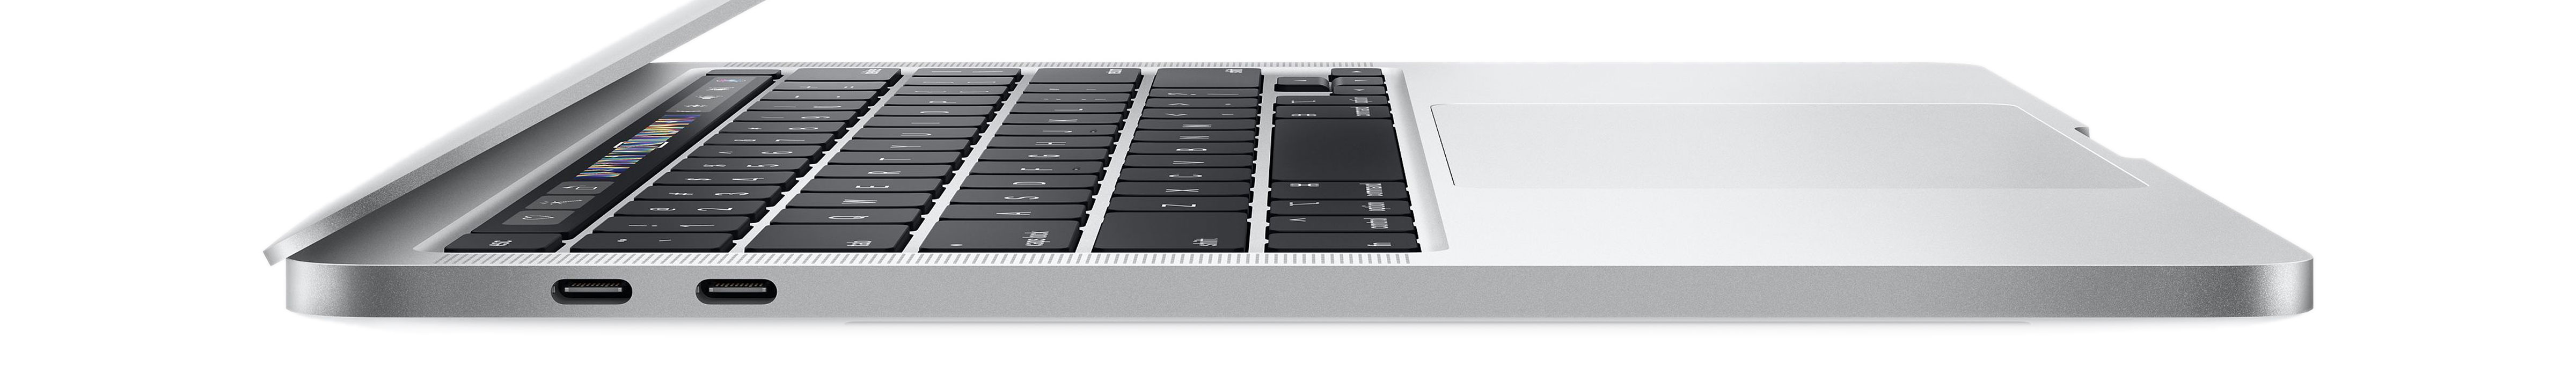 MacBook Pro 16-inch - inruilen